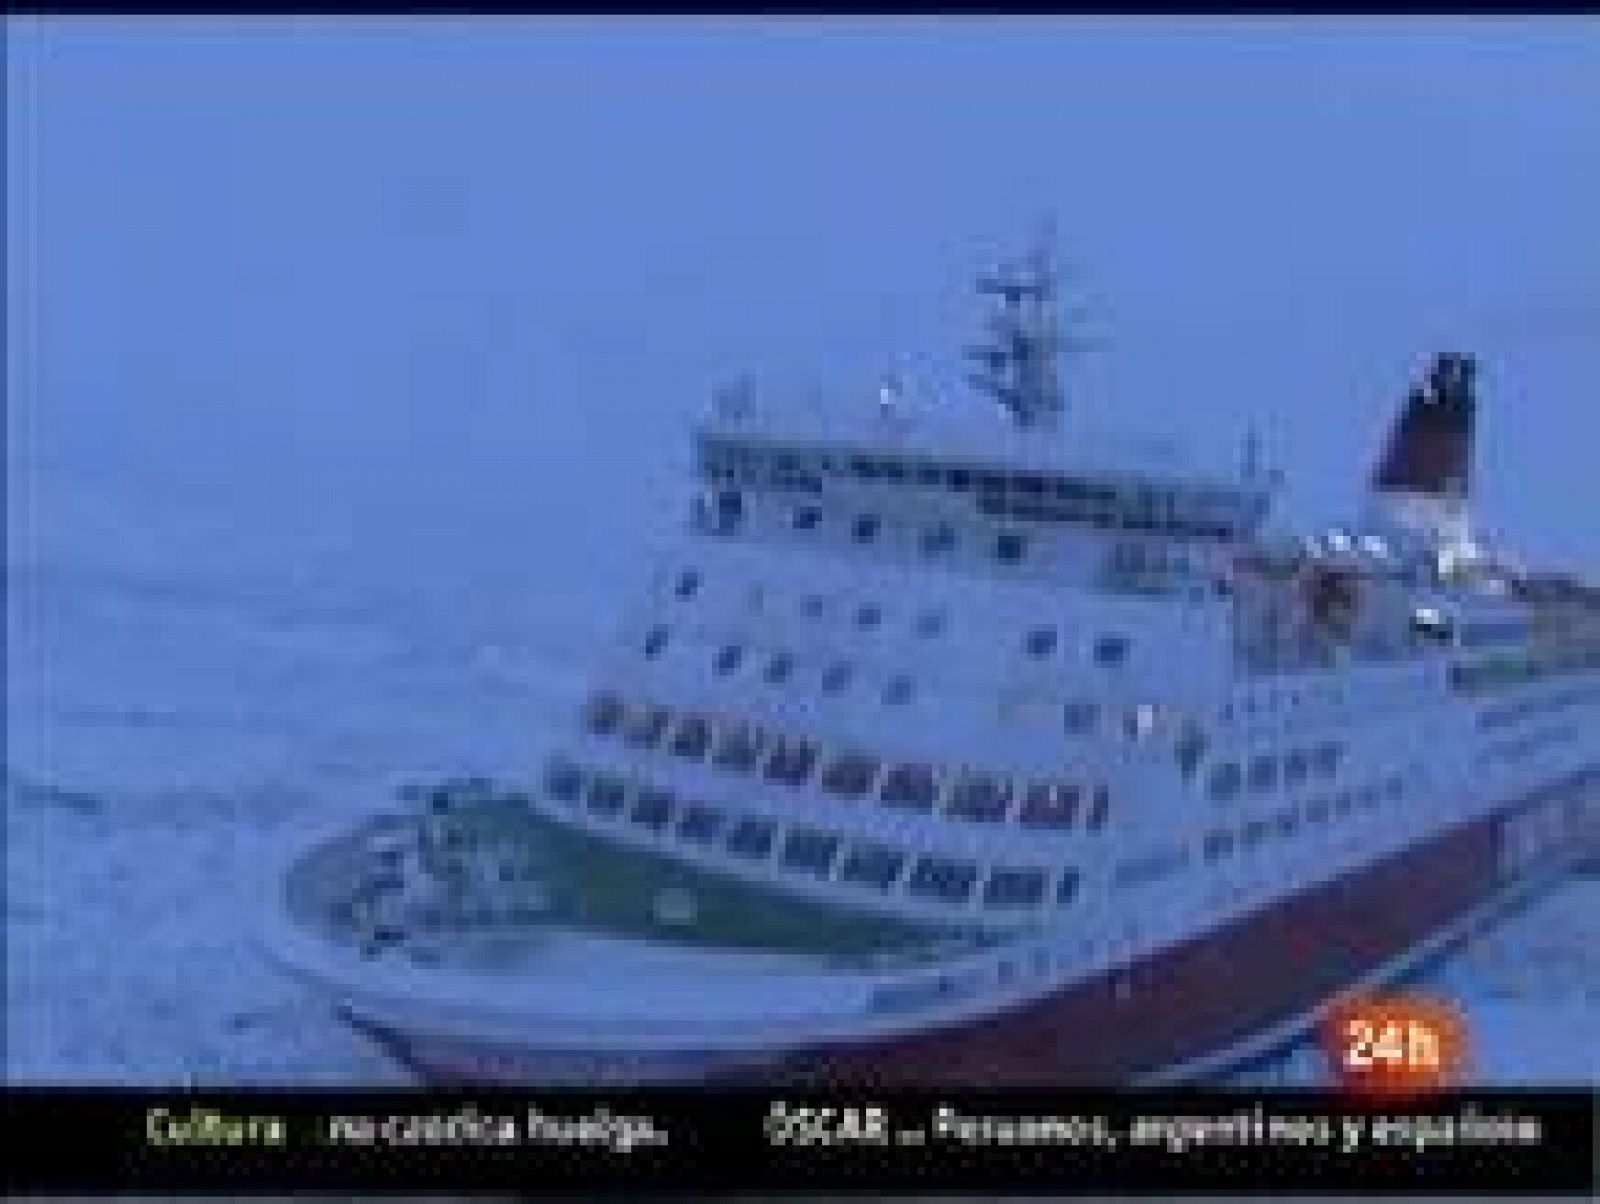 Docenas de barcos atrapados por el hielo en el Ártico han sido liberados